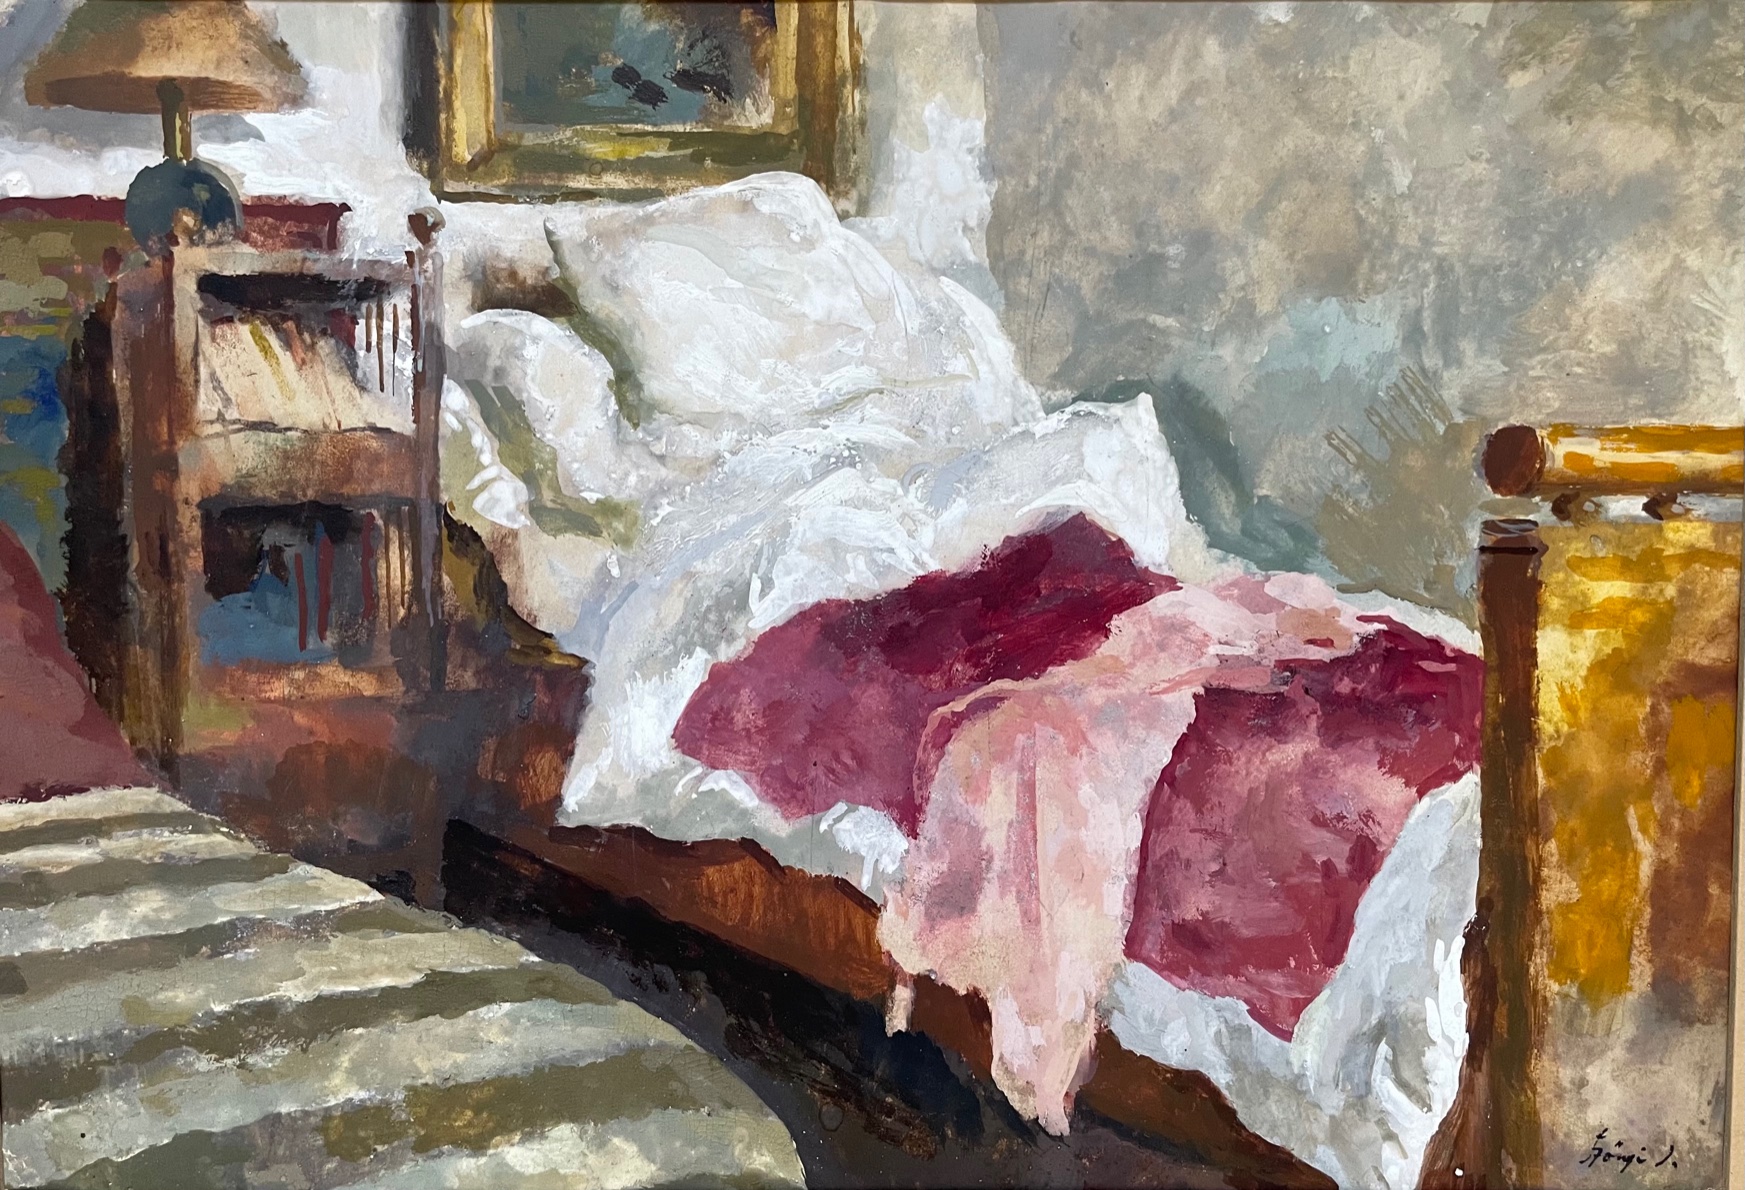 Szőnyi, István: Enterieur with bed